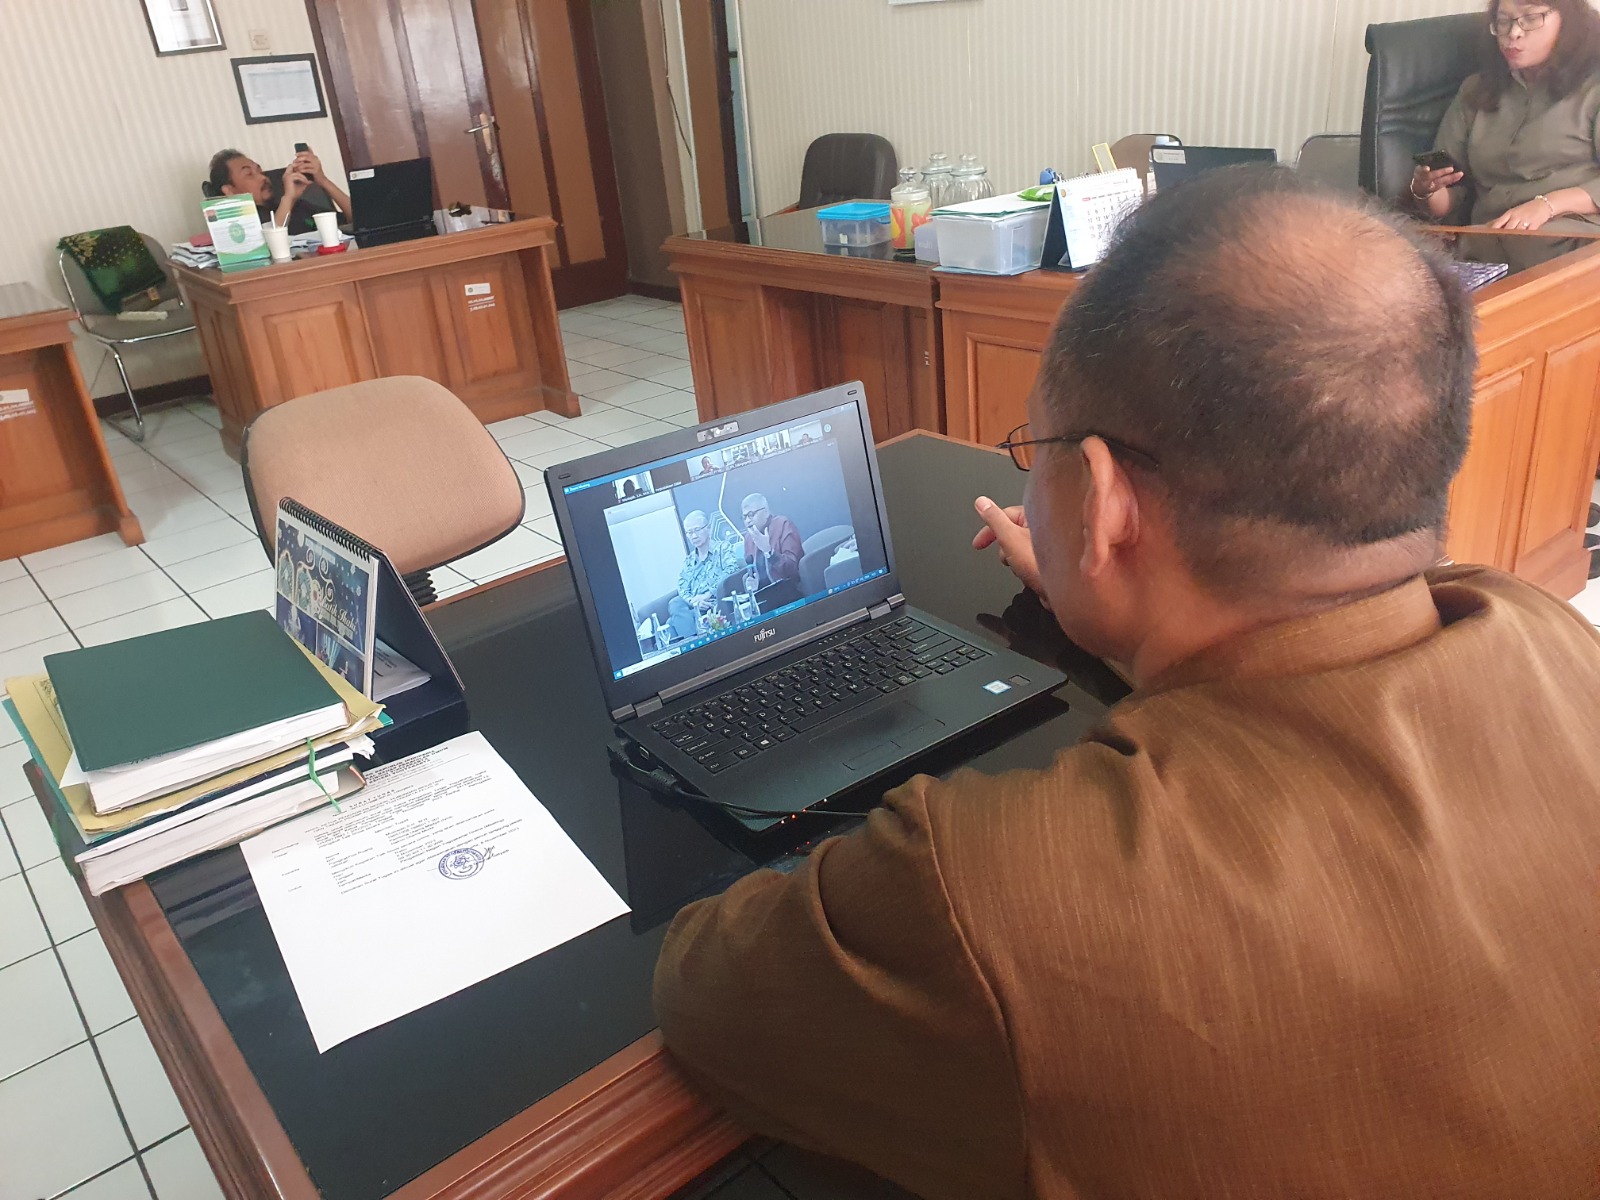 Hakim Pengadilan Negeri Yogyakarta Mengikuti Kegiatan Talk Show secara Online